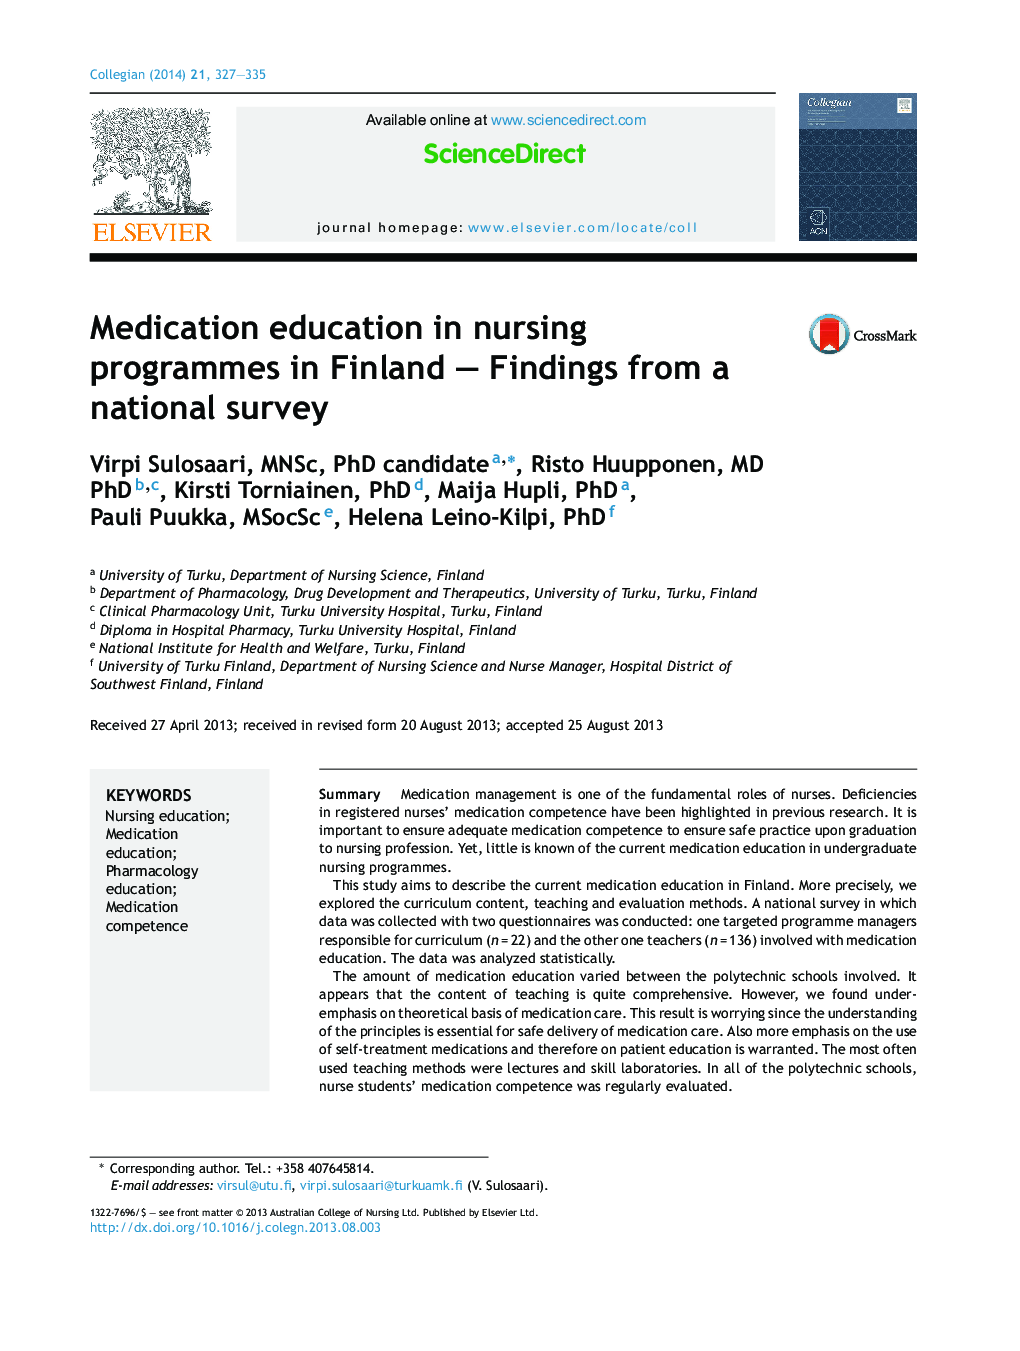 آموزش پزشکی در برنامه های پرستاری در فنلاند - یافته های یک نظرسنجی ملی